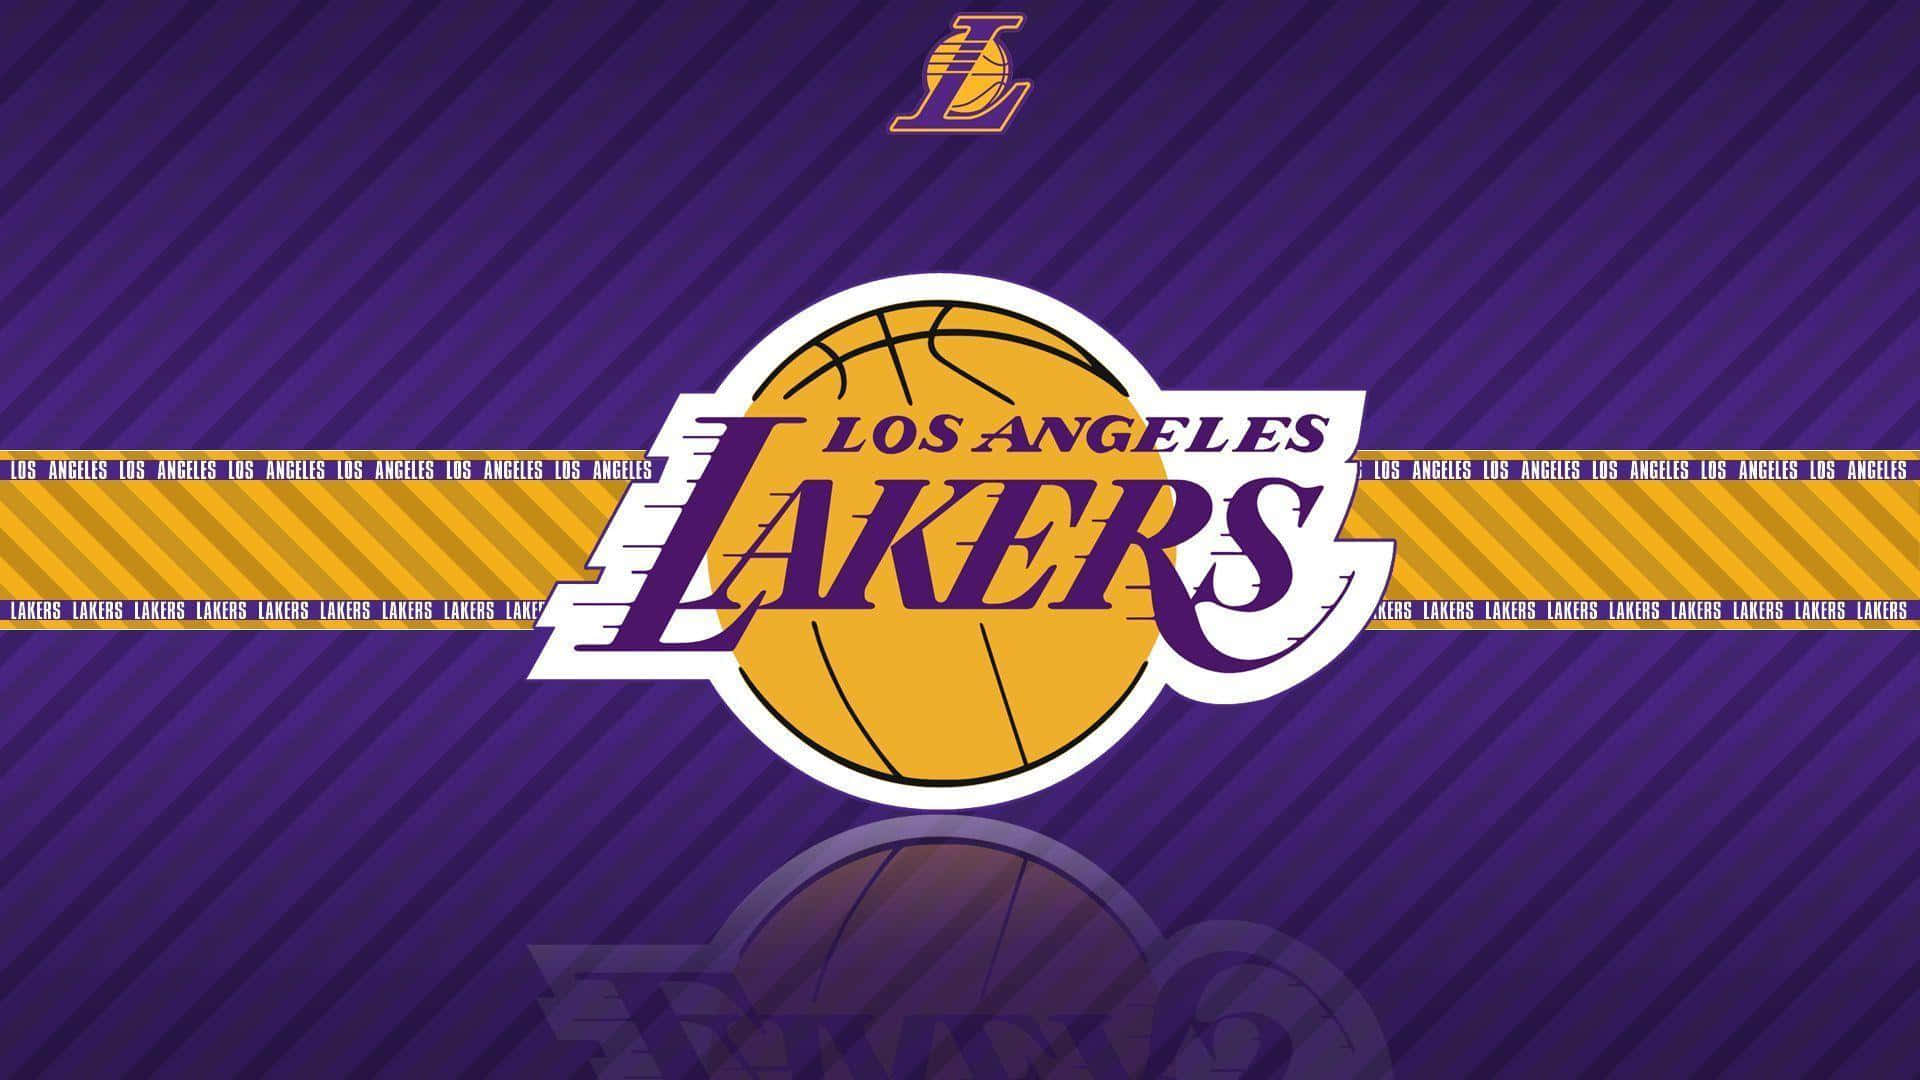 Lakersnba-logo. Wallpaper